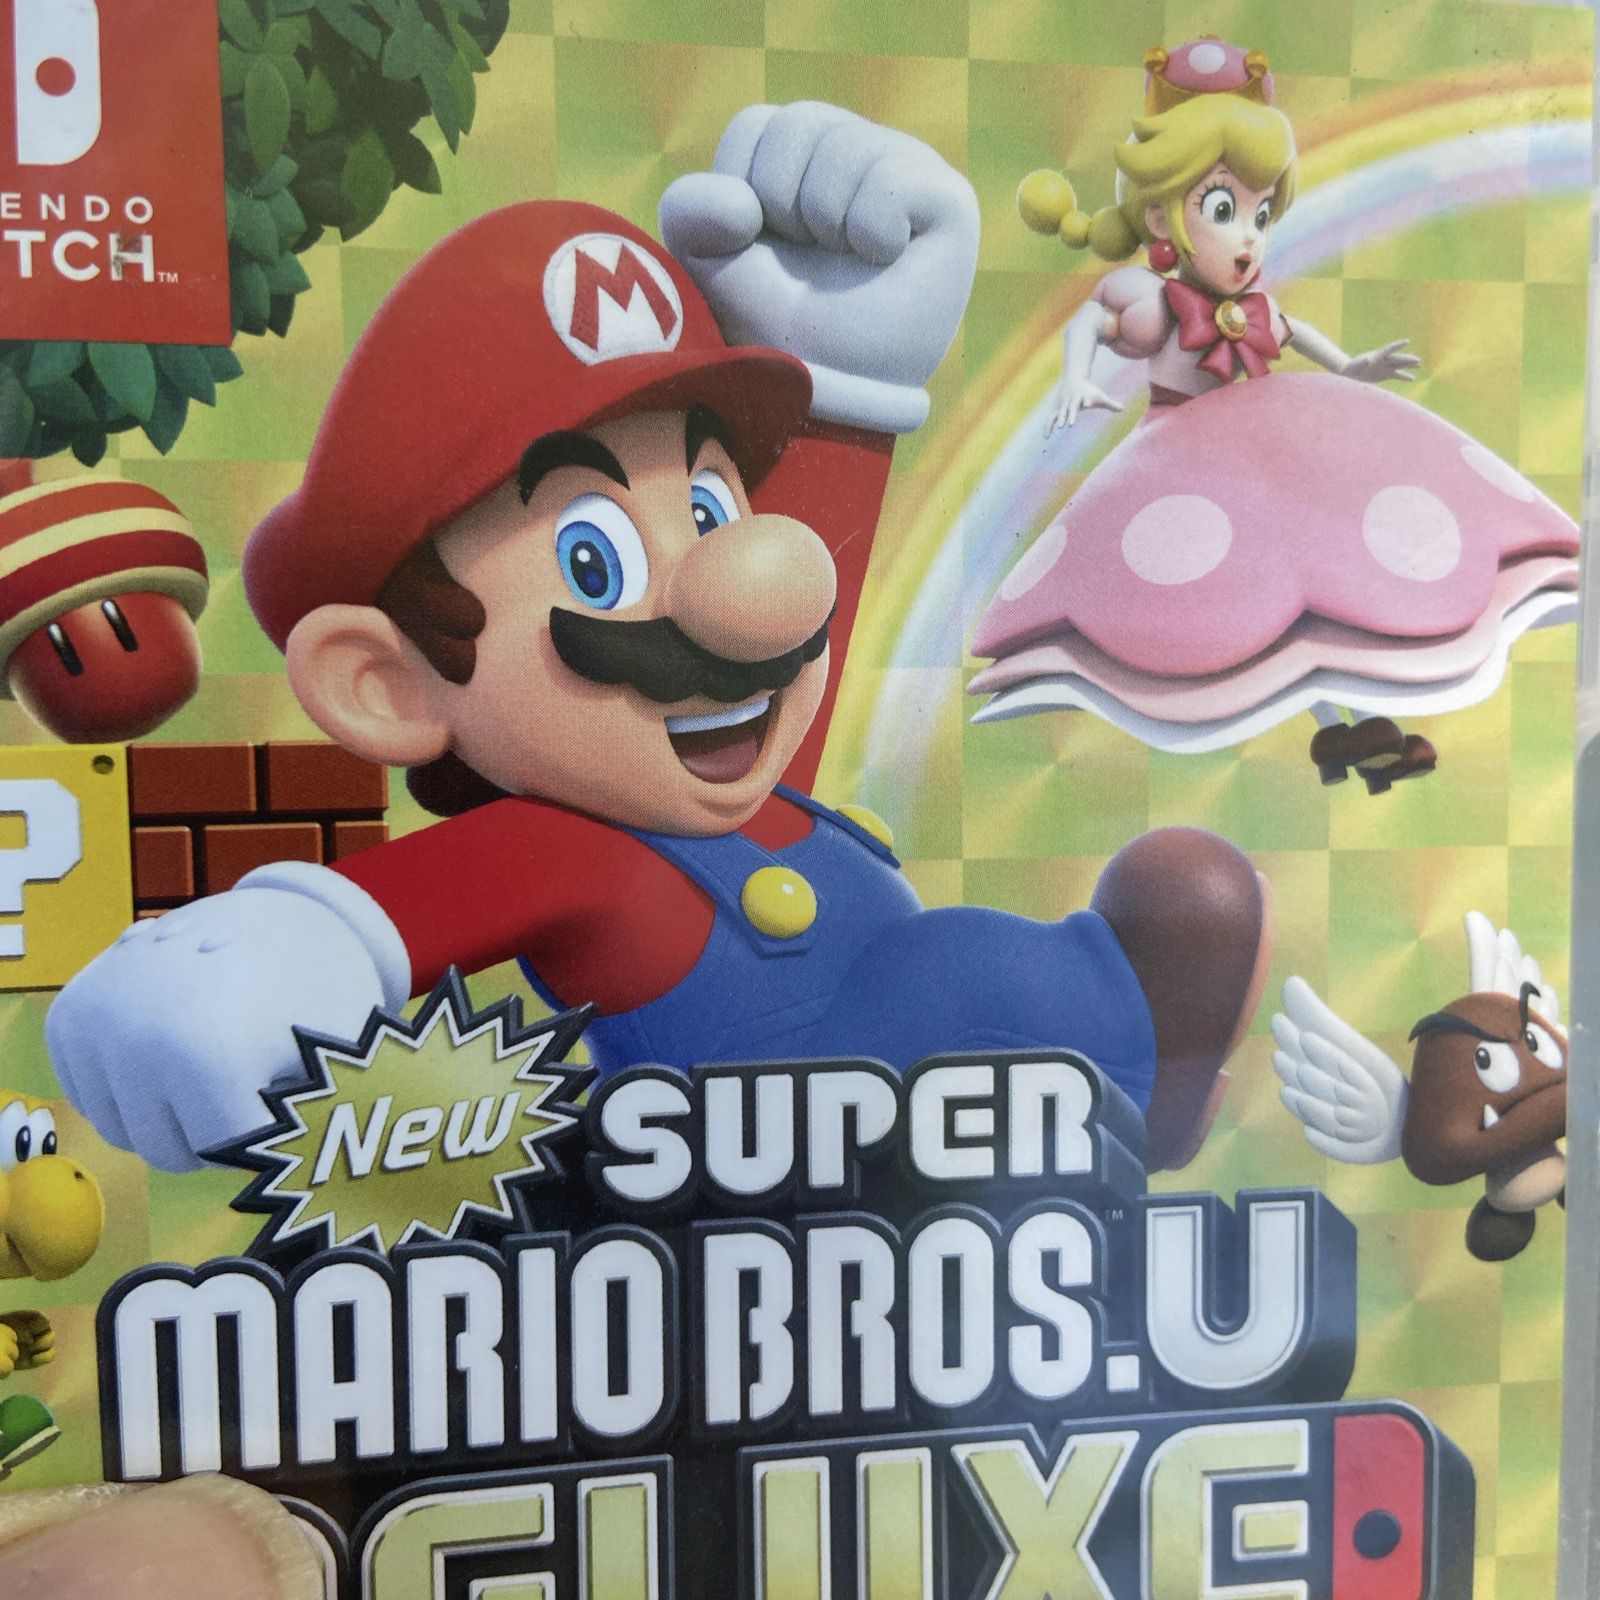 Replacement ORIGINAL Case Box Insert Nintendo Switch Super Mario Bros. U Deluxe